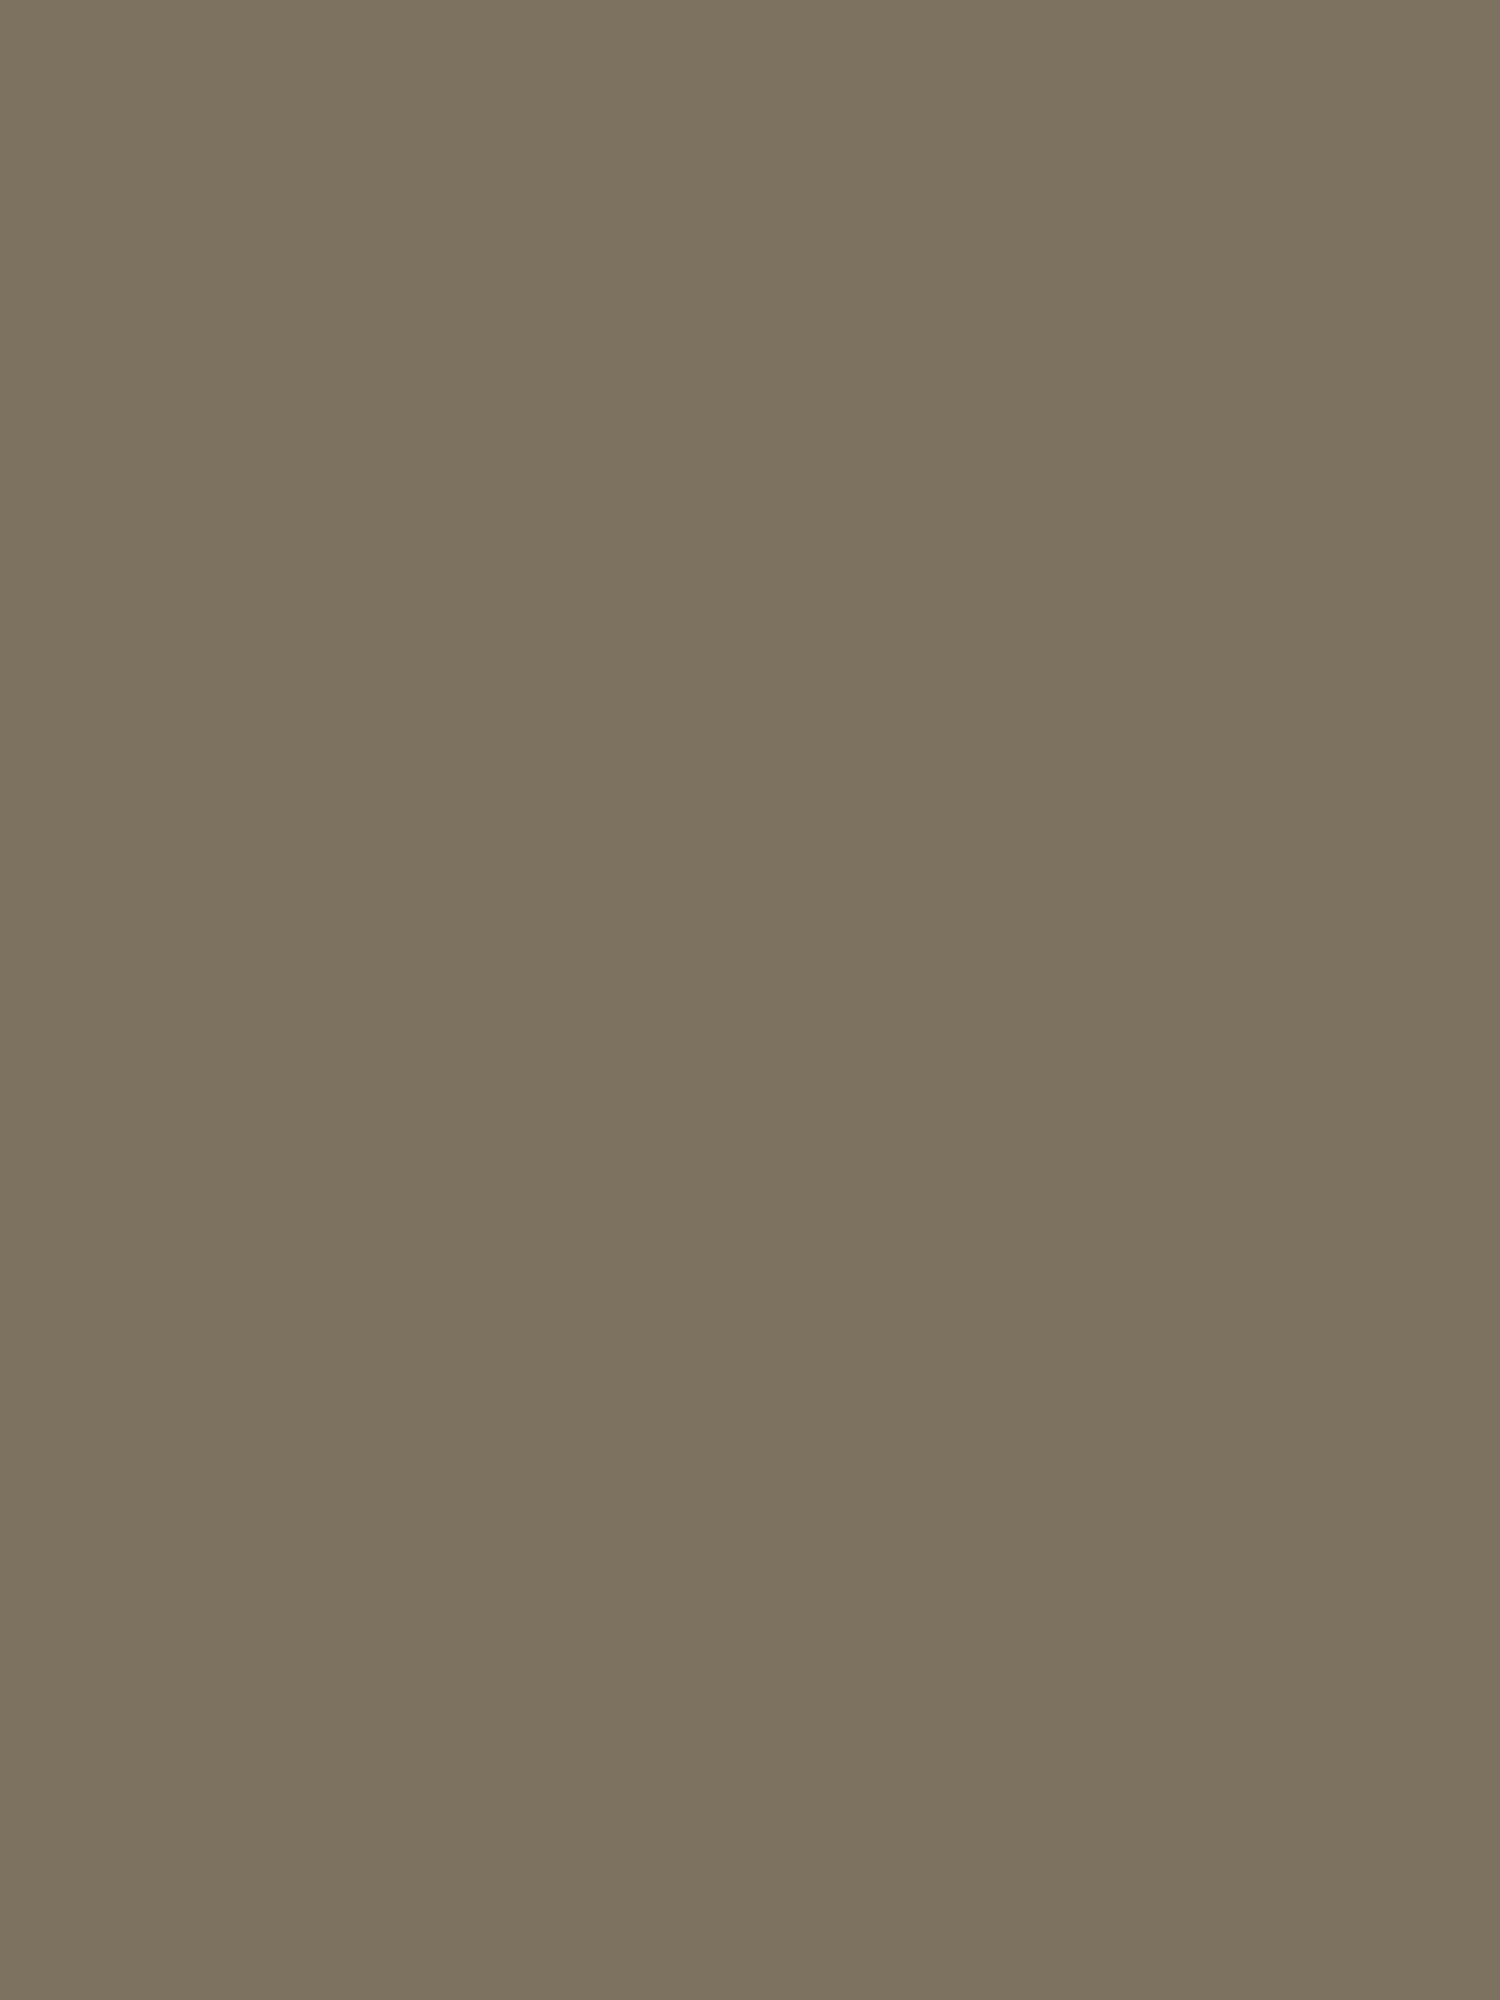 Василий Суриков. Сибирская красавица. 1891. Государственная Третьяковская галерея, Москва